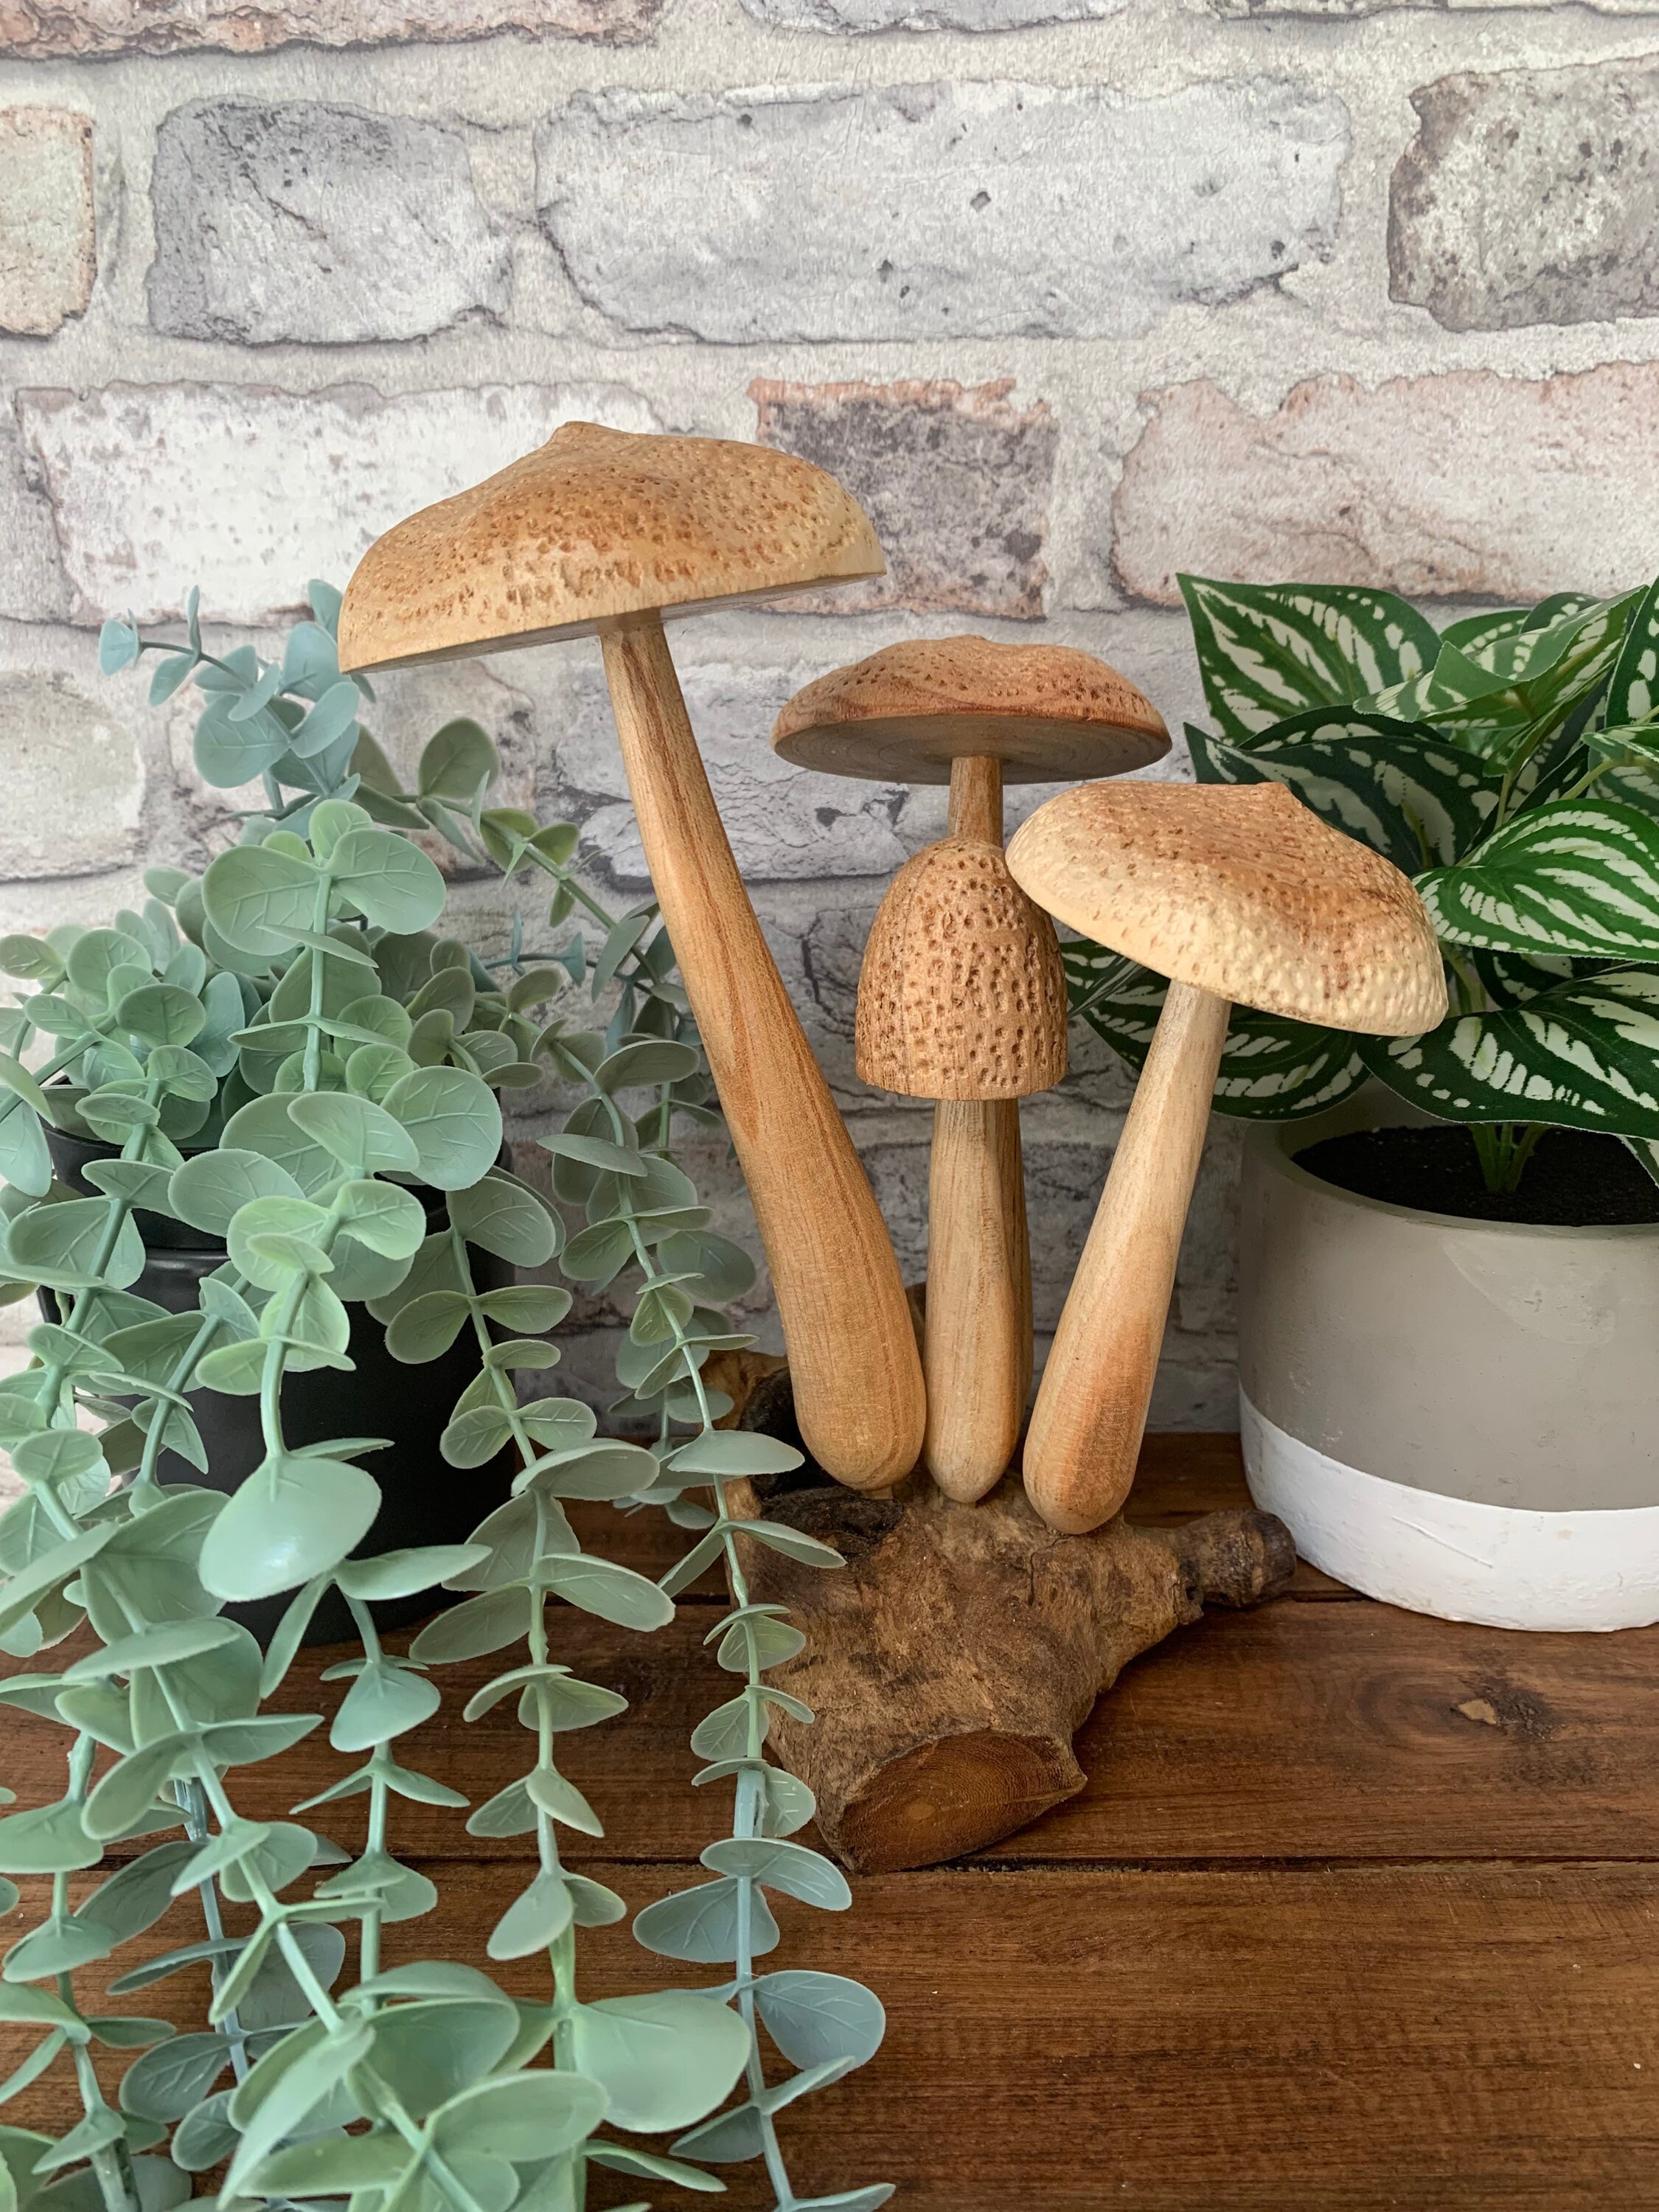 Miniature mushrooms terrarium décor - Fake mushroom terrarium